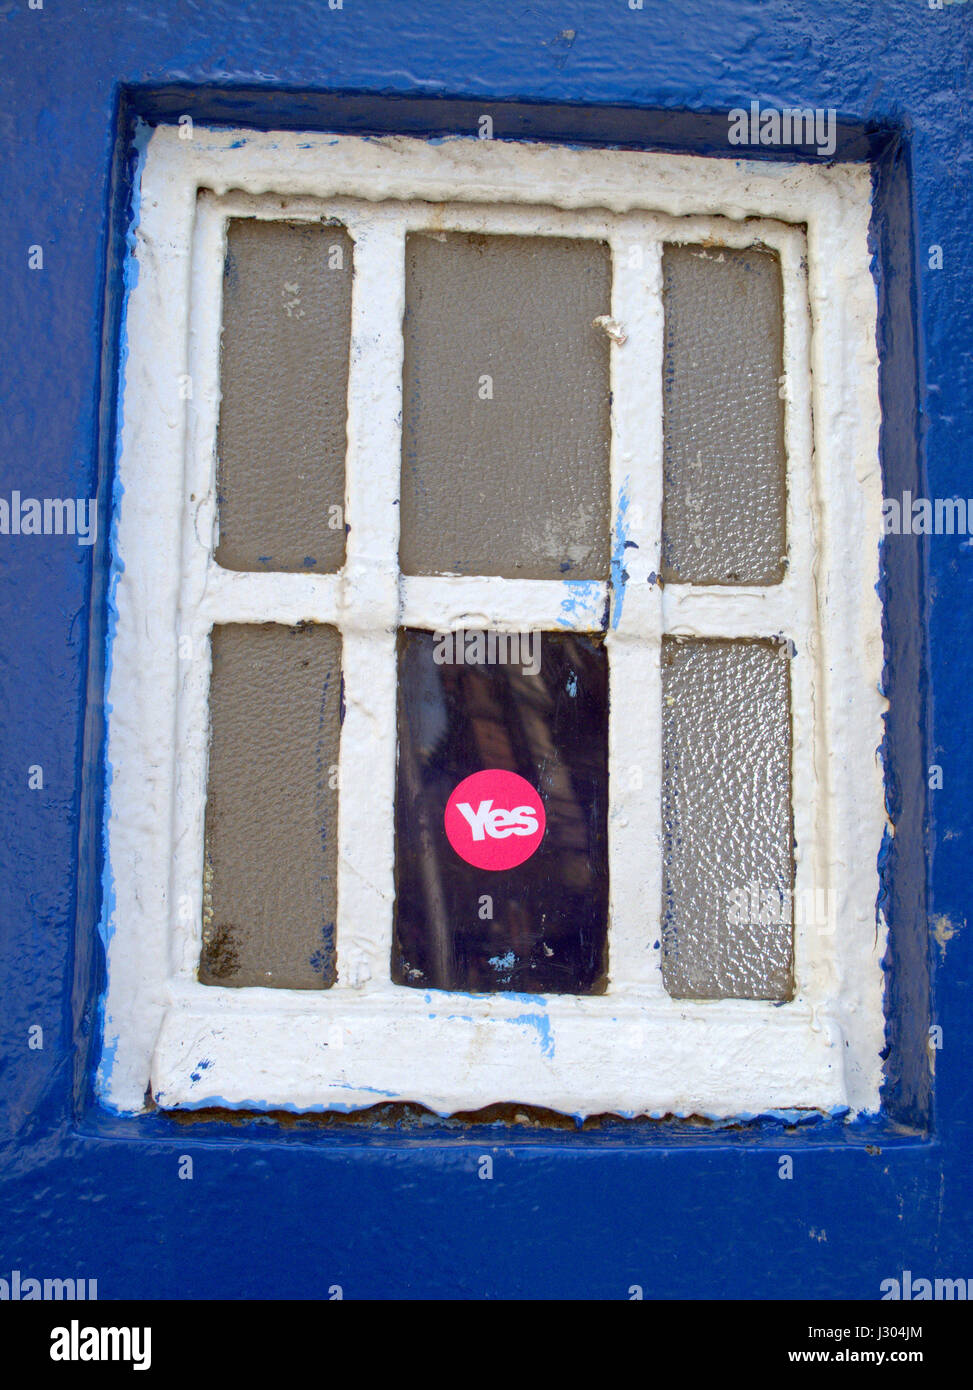 SNP Scottish National Party ja Abstimmung Austritt Unabhängigkeit Wahl Ja Stimmen Arbeits-Aufkleber Om blauen Polizei Kasten Fenster Stockfoto